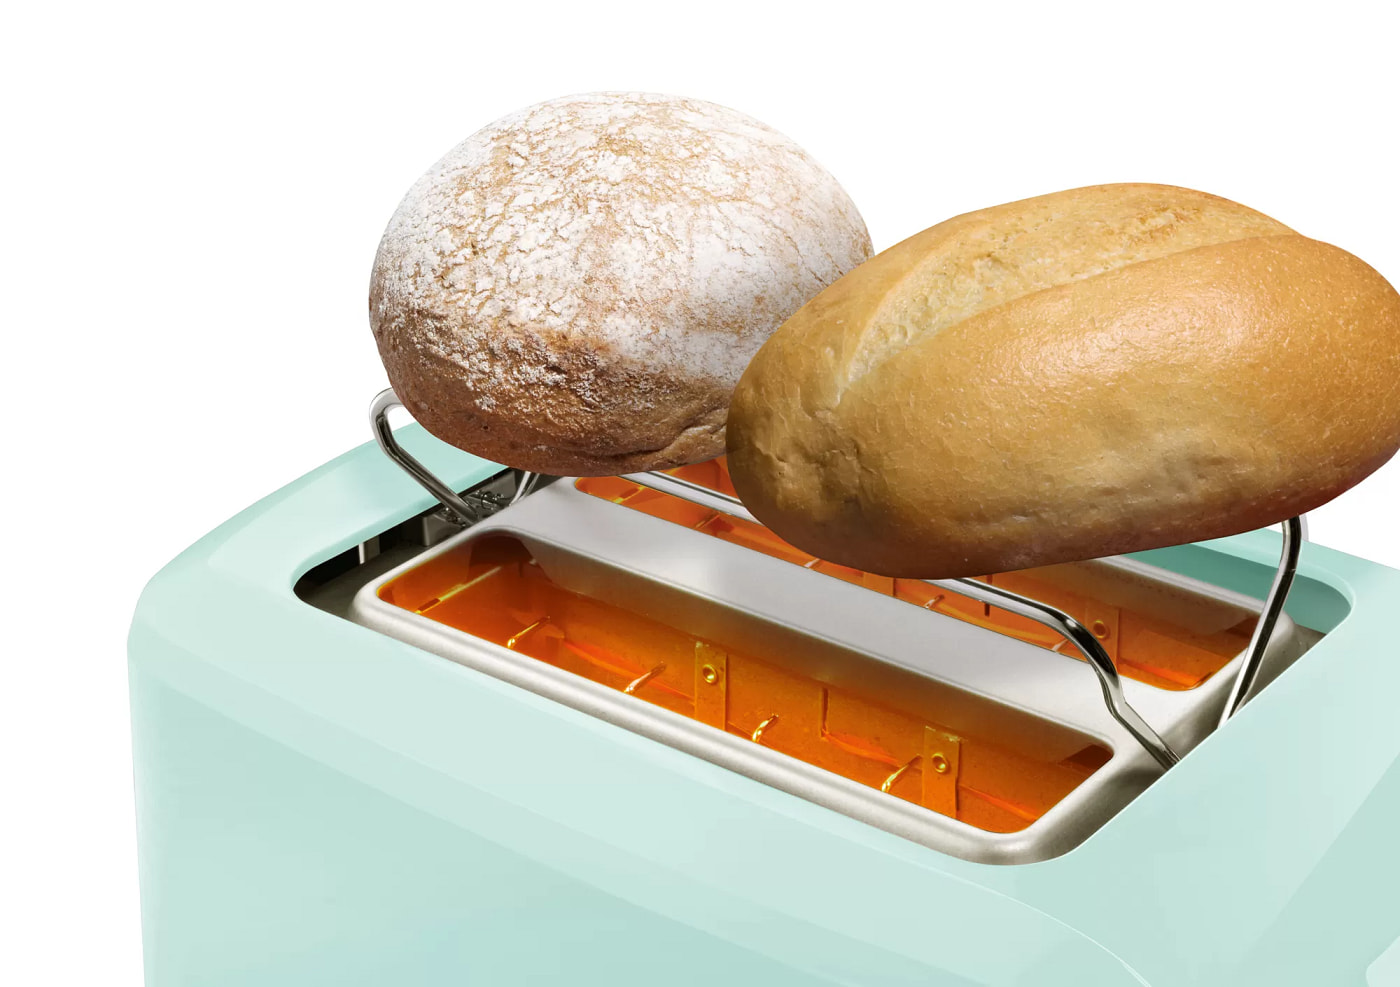 Prajitor de paine Bosch TAT3A012